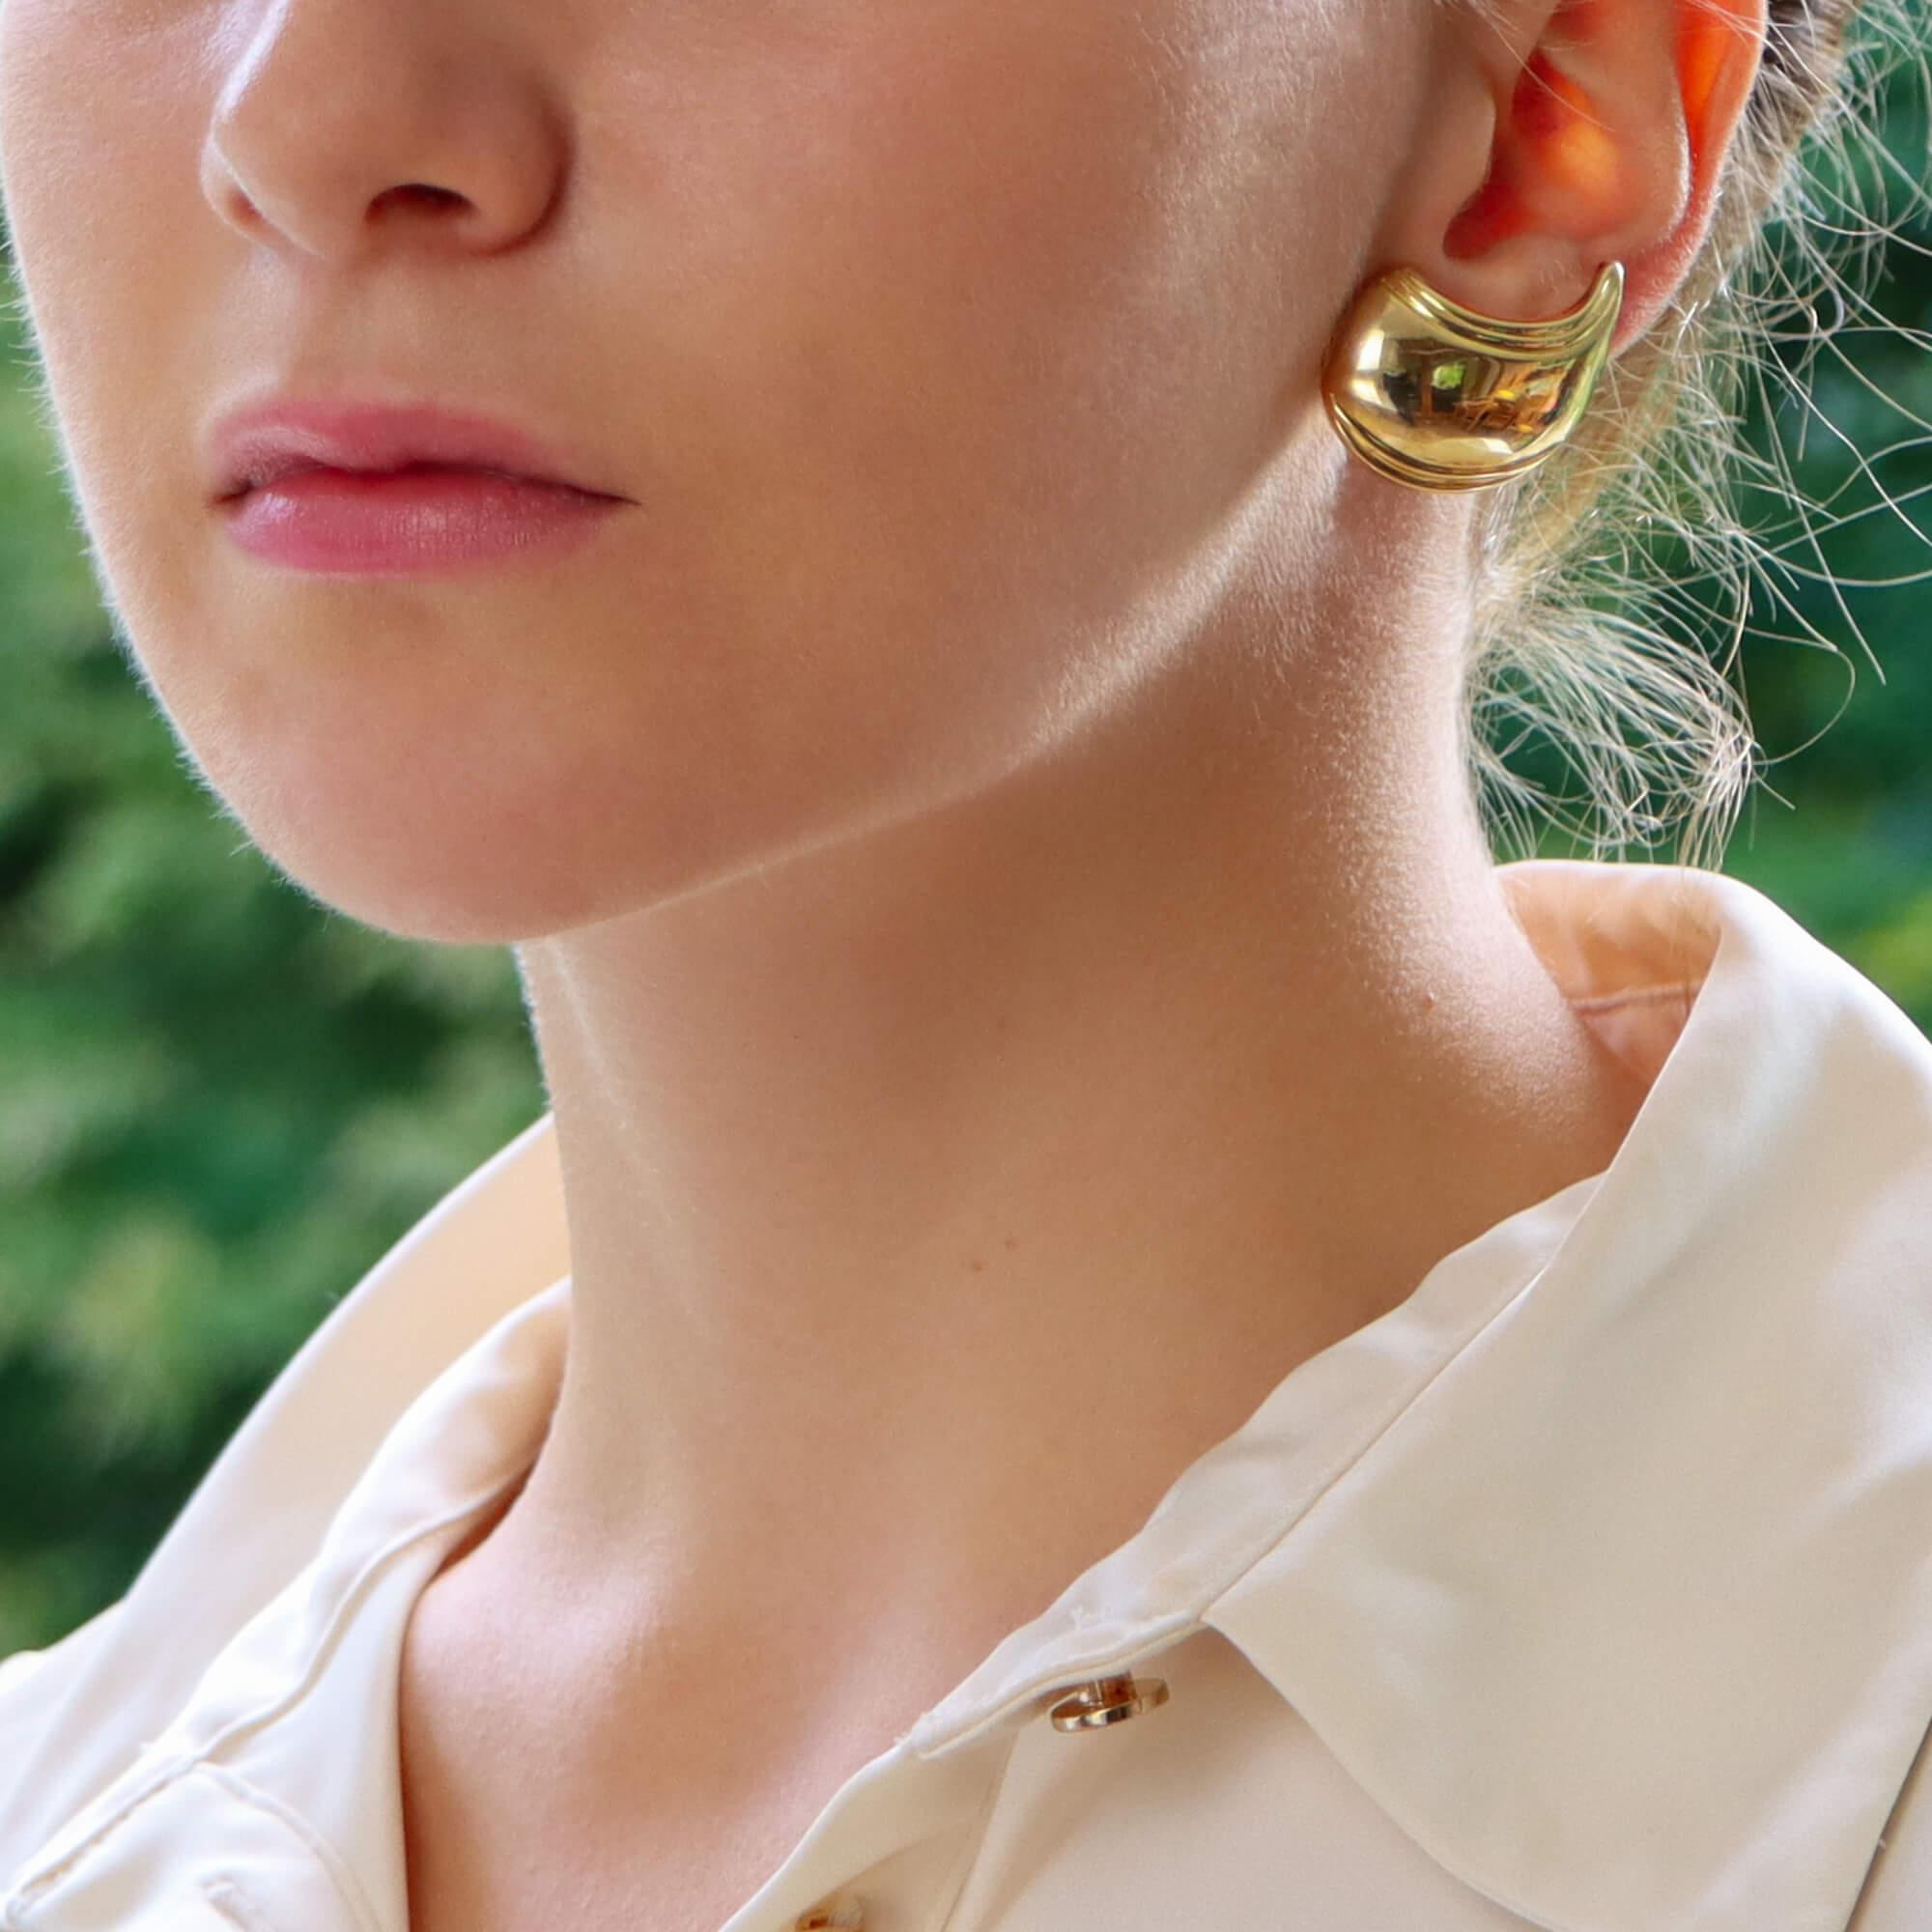 Ein stilvolles Paar geschwungener Goldohrringe aus den 1980er Jahren in 18 Karat Gelbgold.

Jeder Ohrring besteht aus einer geriffelten, gebogenen Platte, die sich am Ohr der Trägerin nach oben bewegt. Die Ohrringe sind eine Ikone der 1980er Jahre